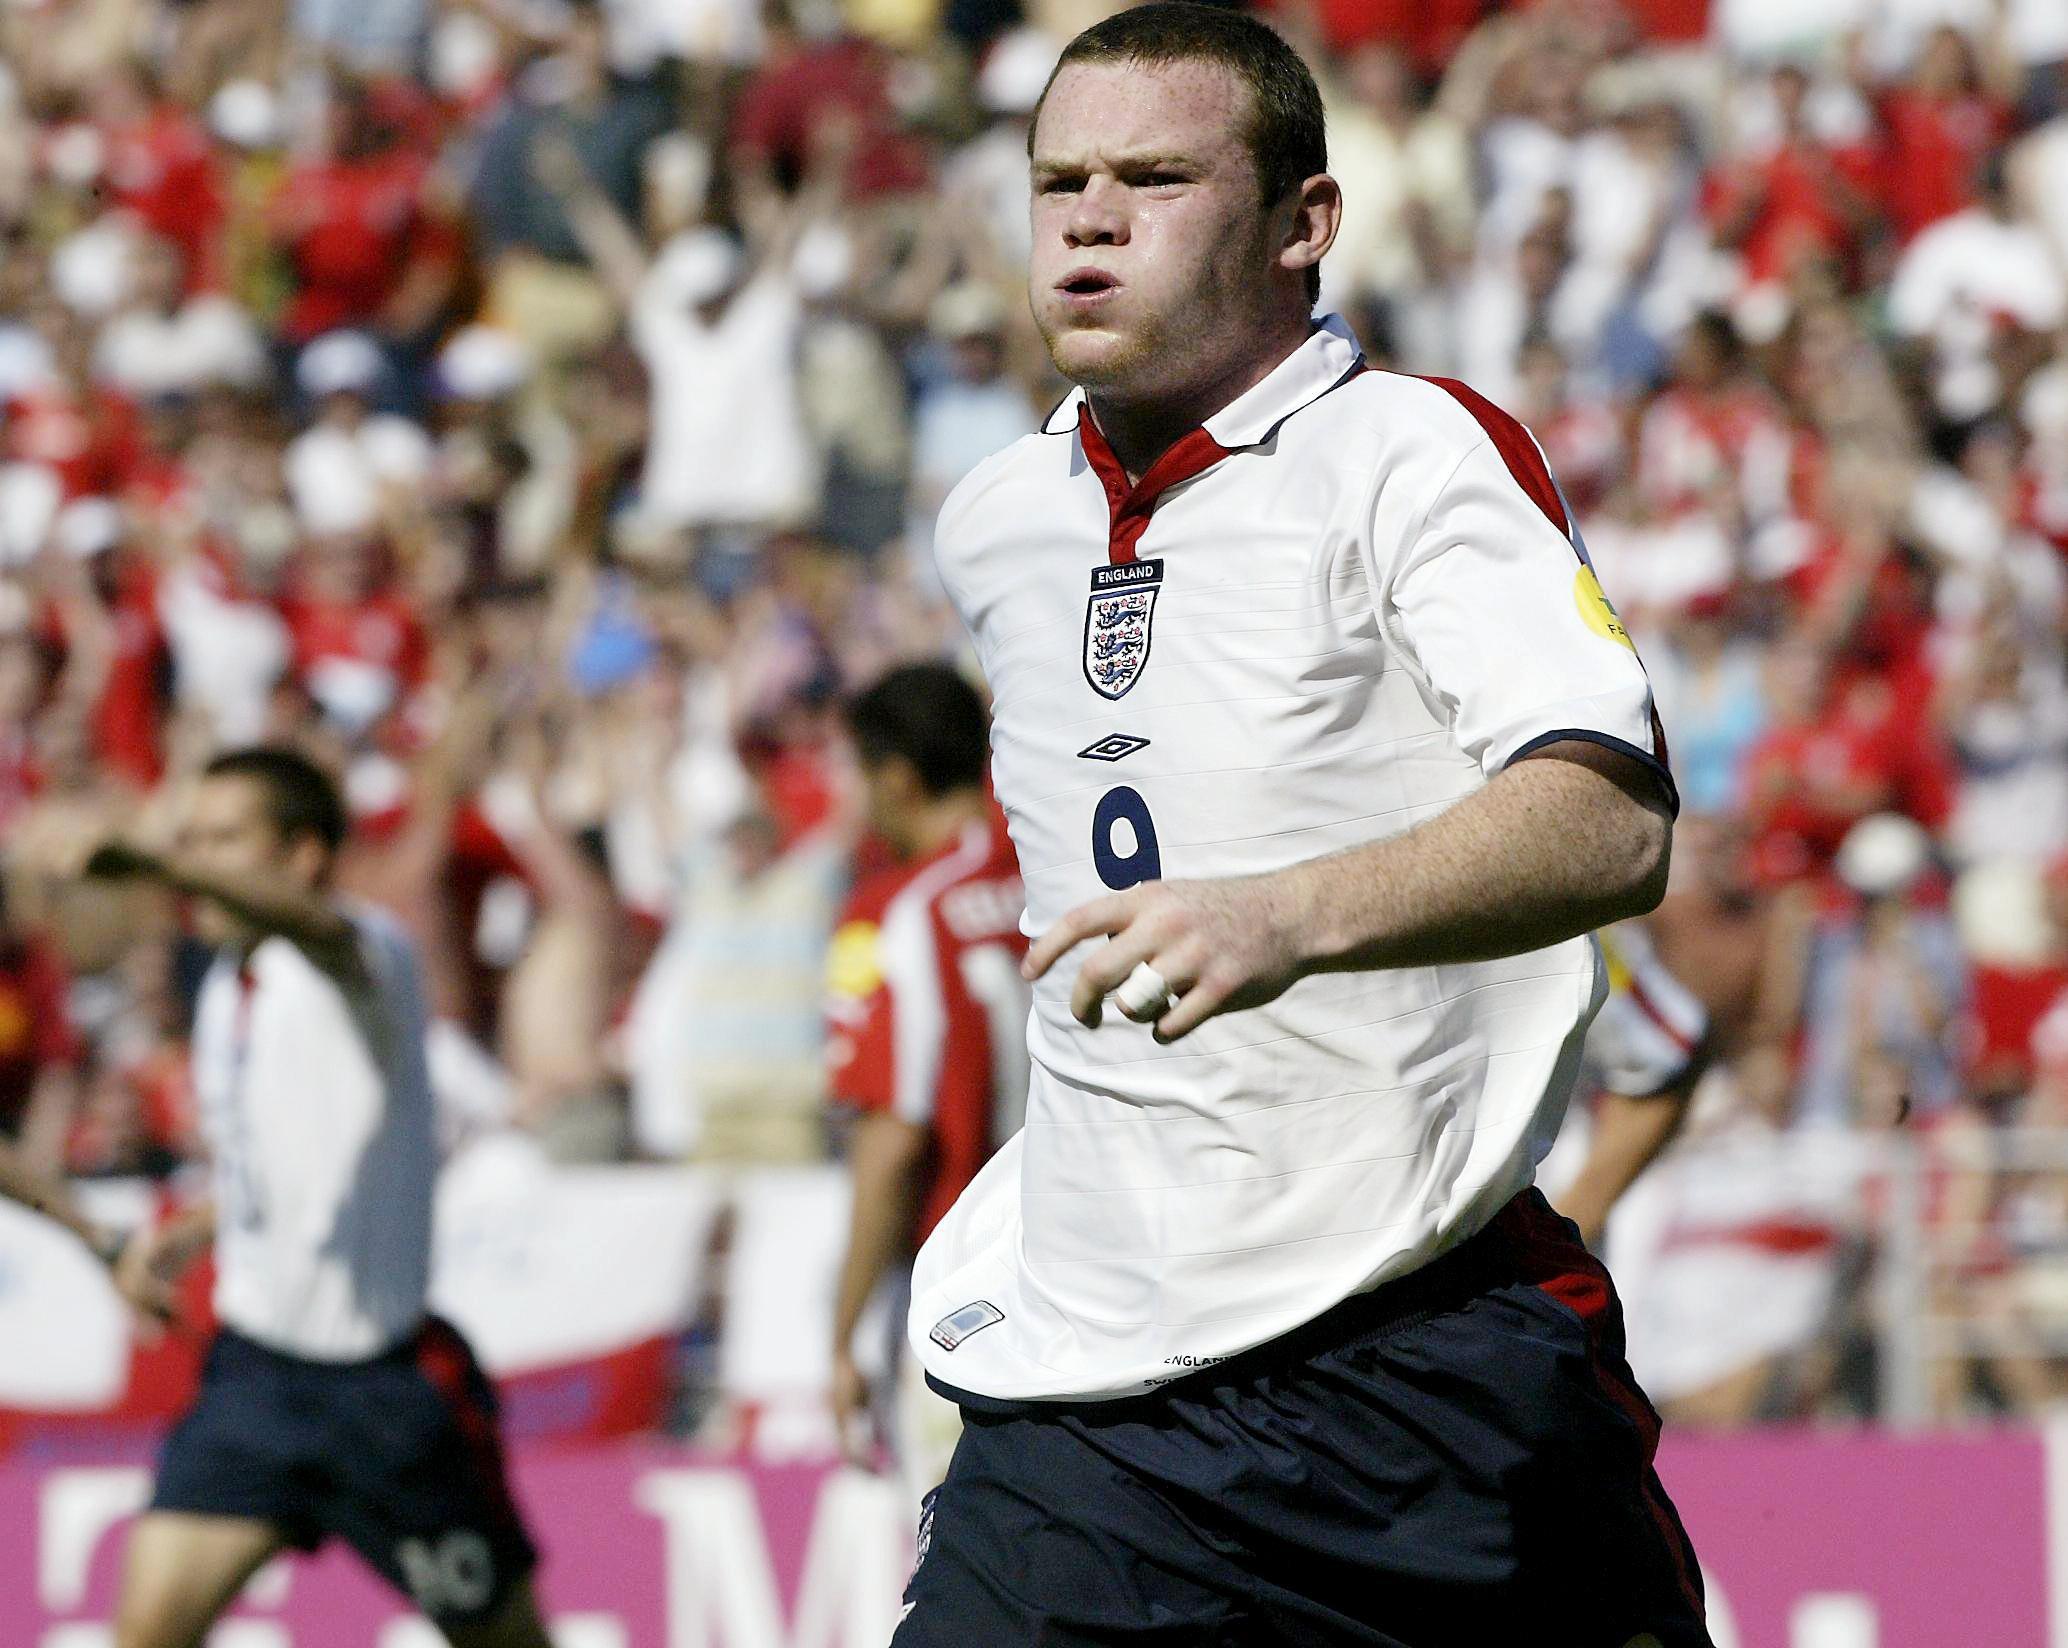 Wayne Rooney dell'Inghilterra festeggia dopo aver segnato un gol contro la Svizzera a Euro 2004